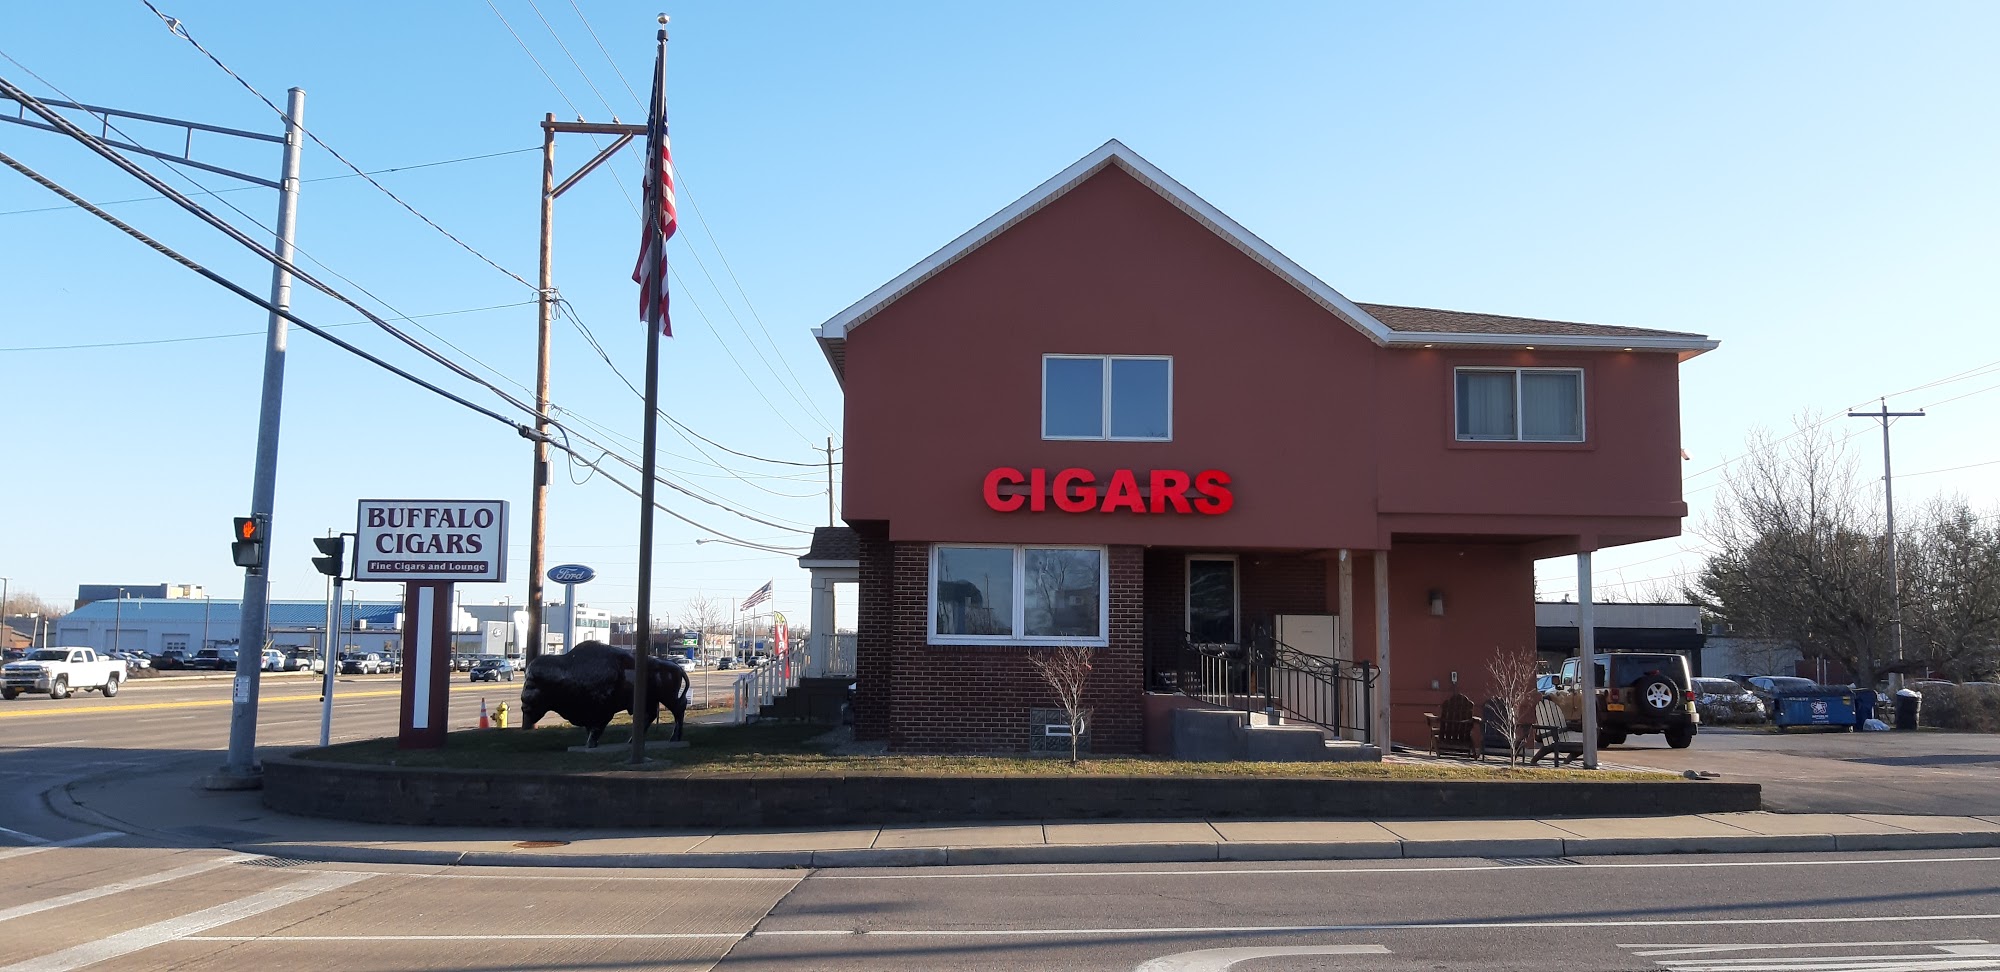 Buffalo Cigars